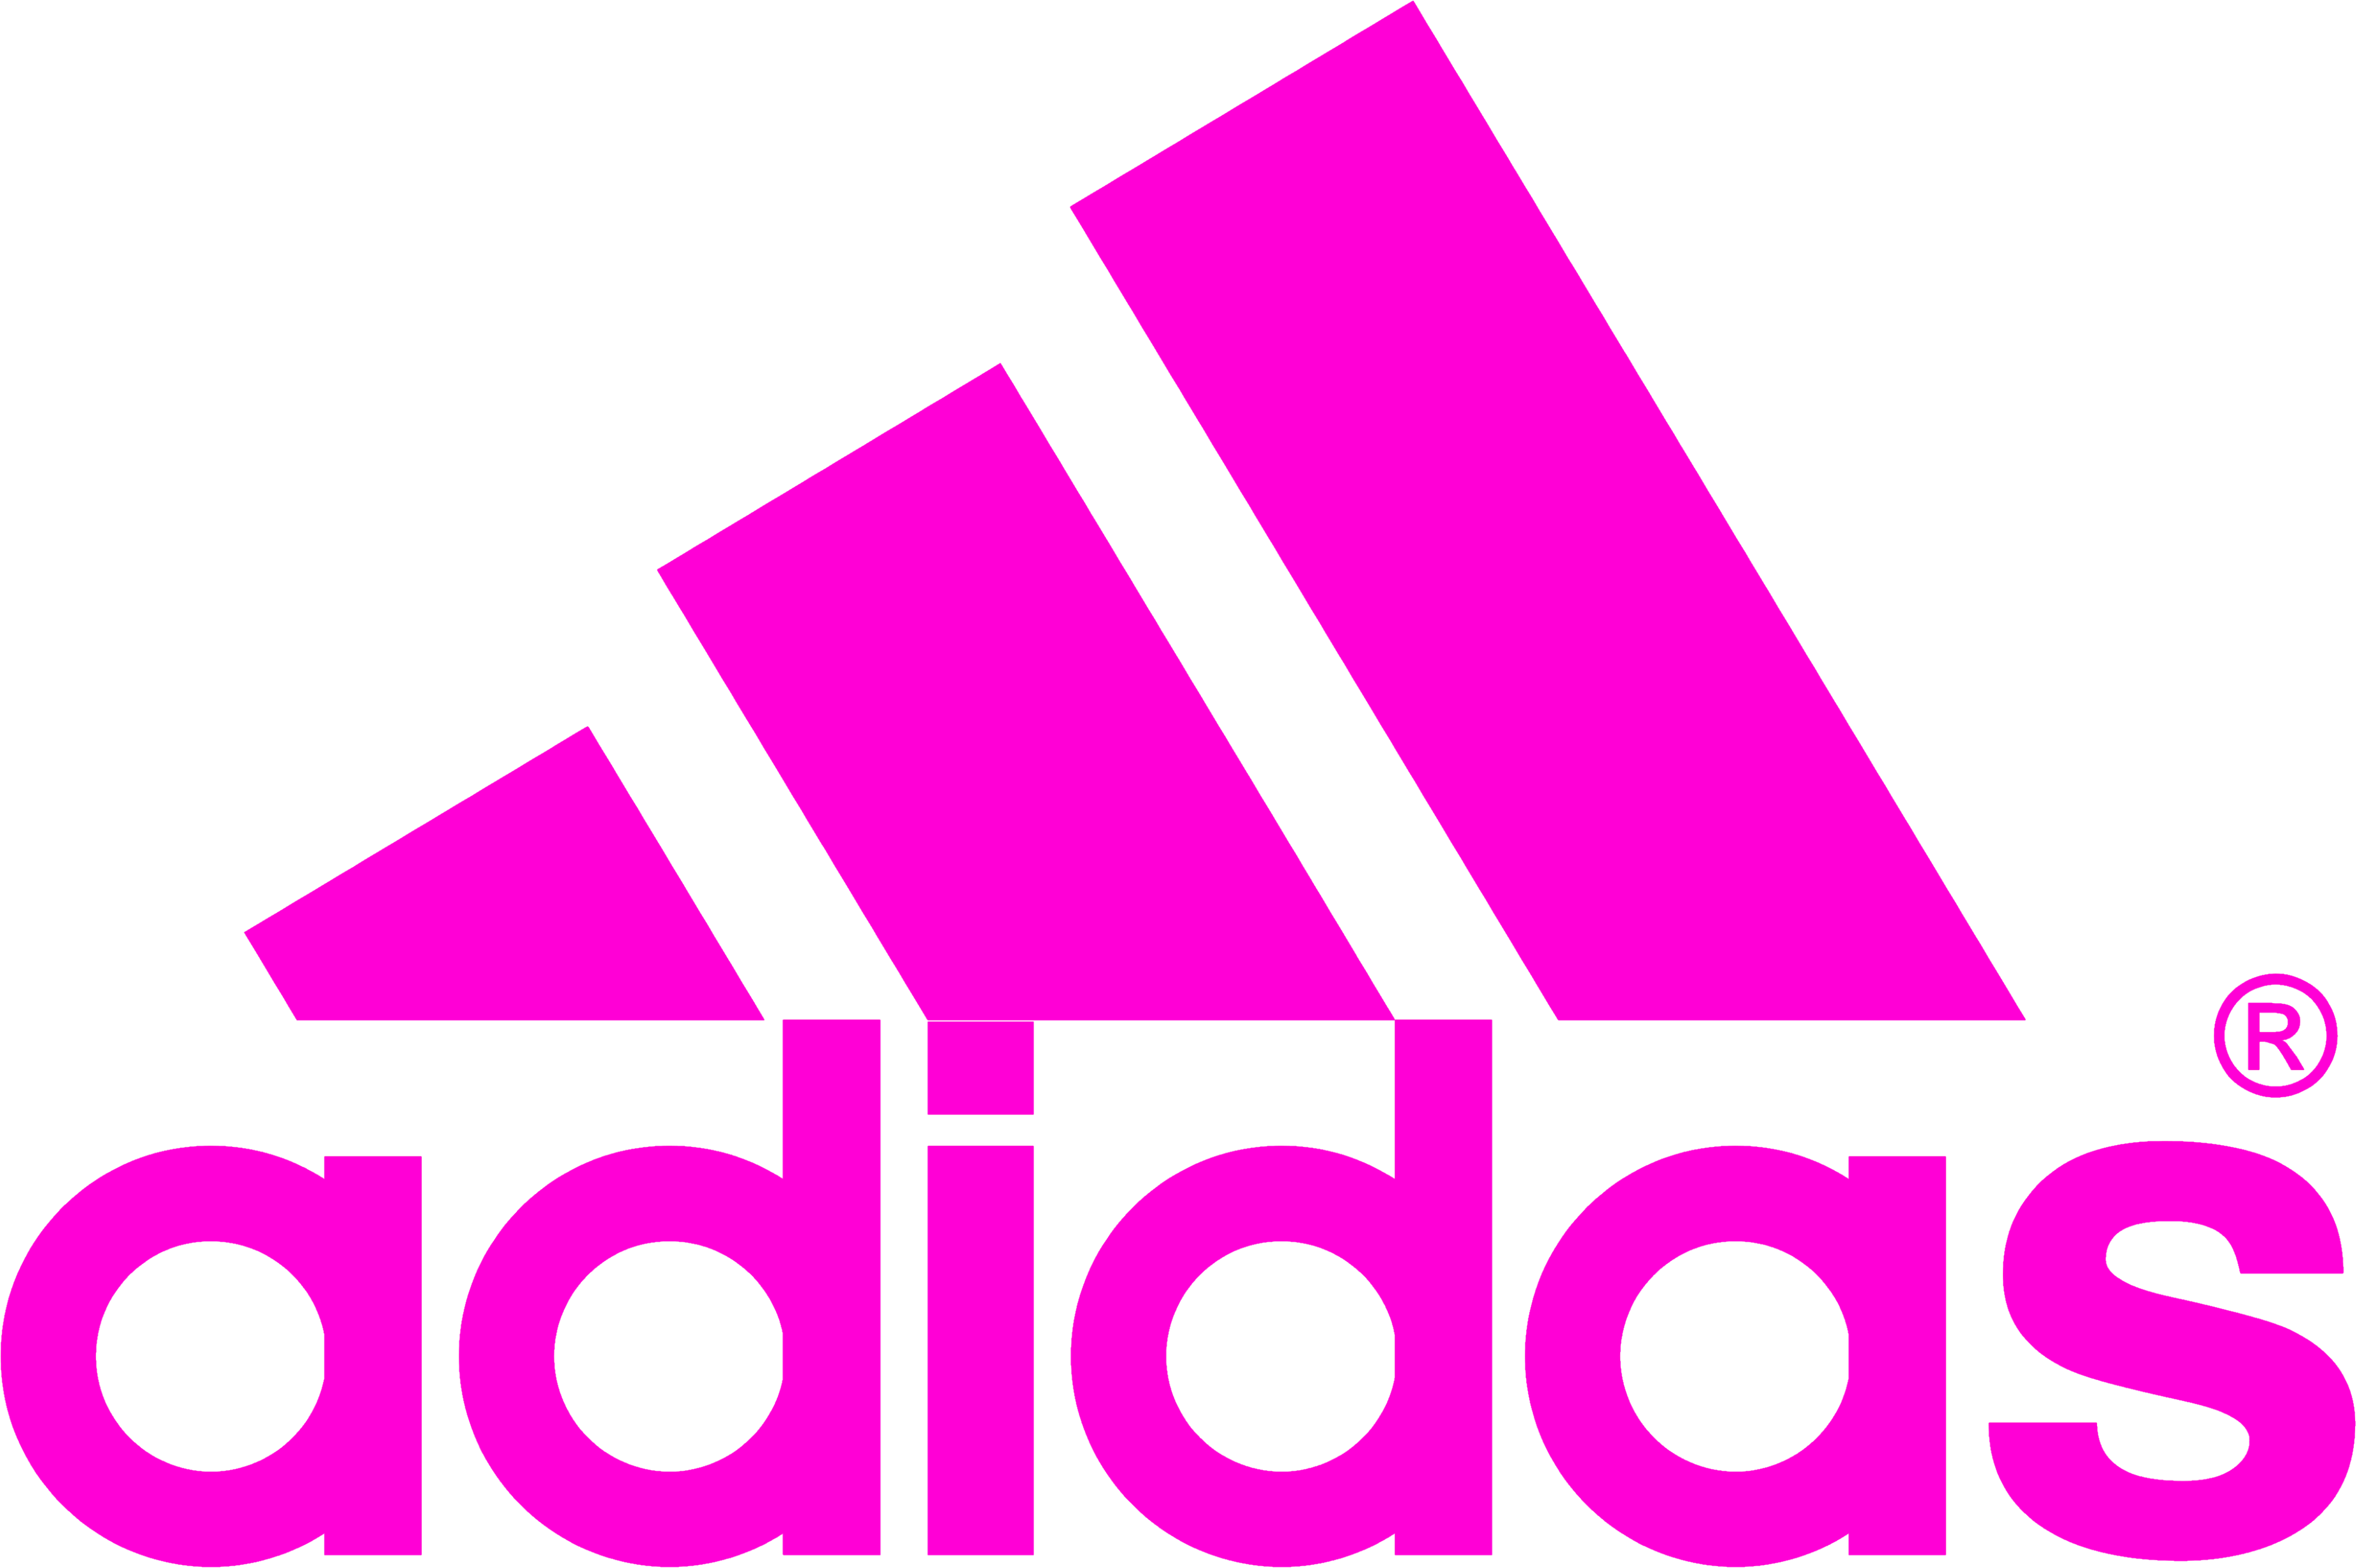 Adidas Purple Logo - Adidas logo PNG images free download